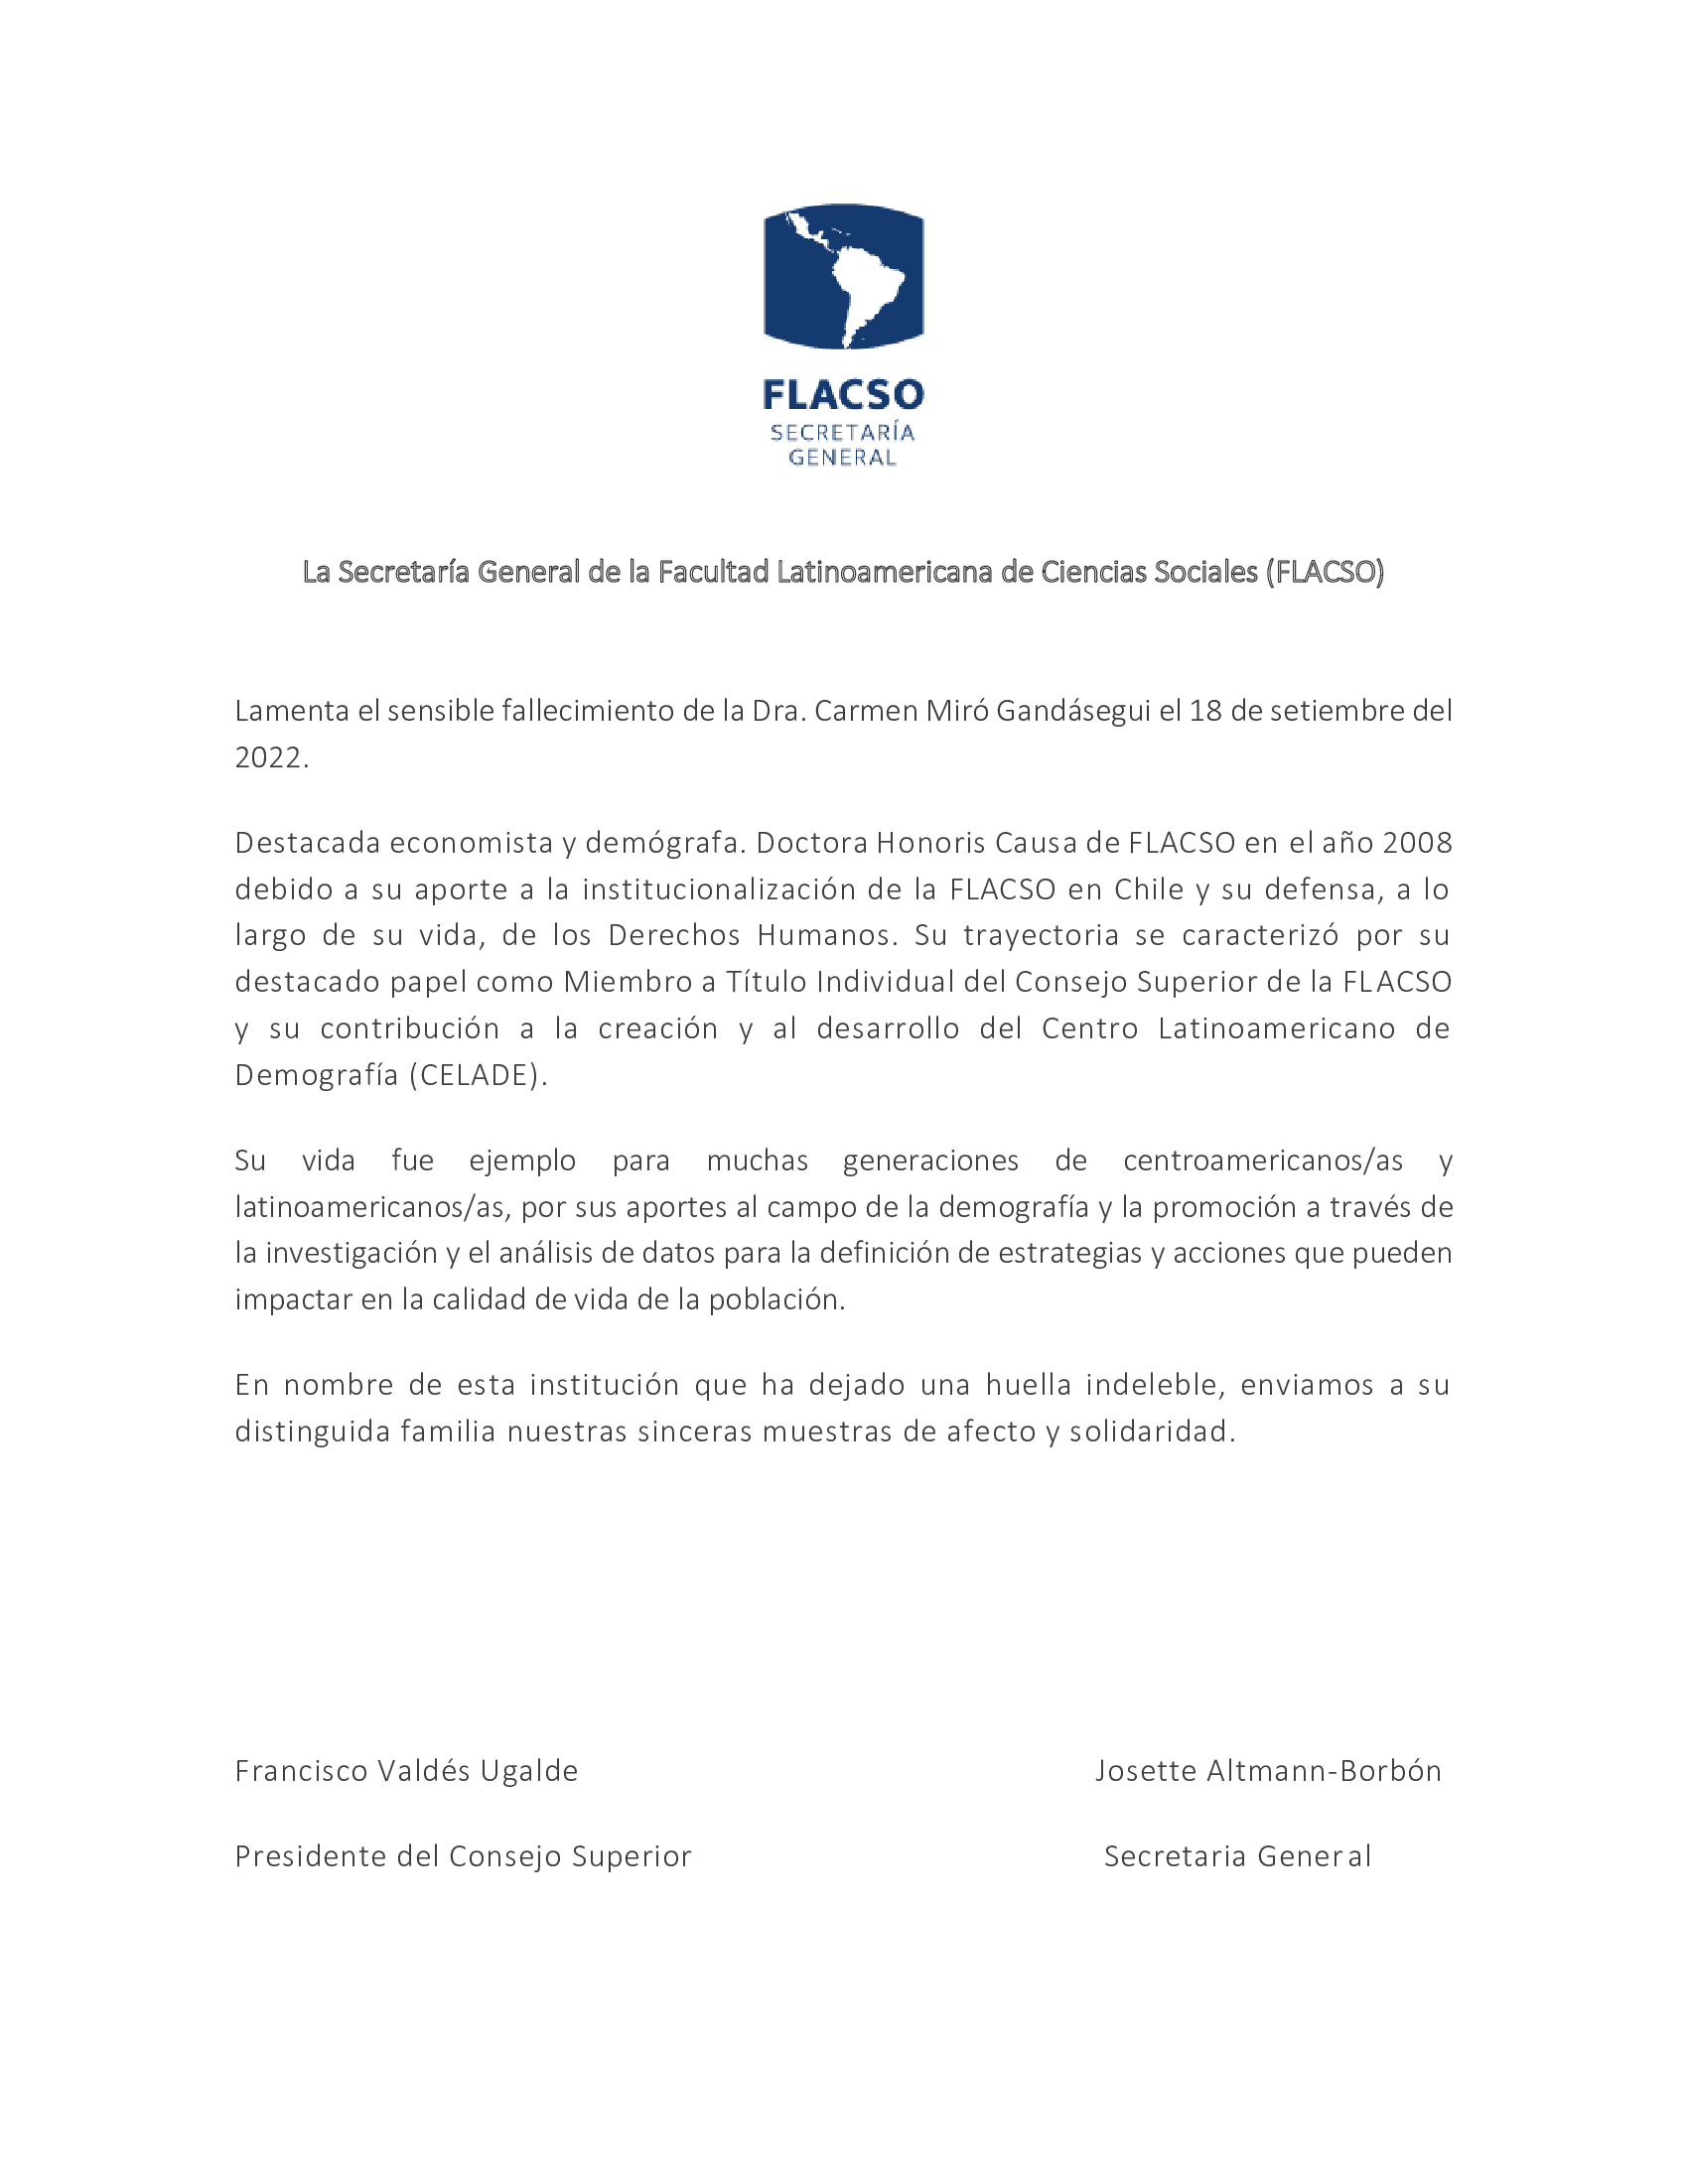 La Secretaria General de la FLACSO lamenta el fallecimiento de la Dra. Carmen Miró